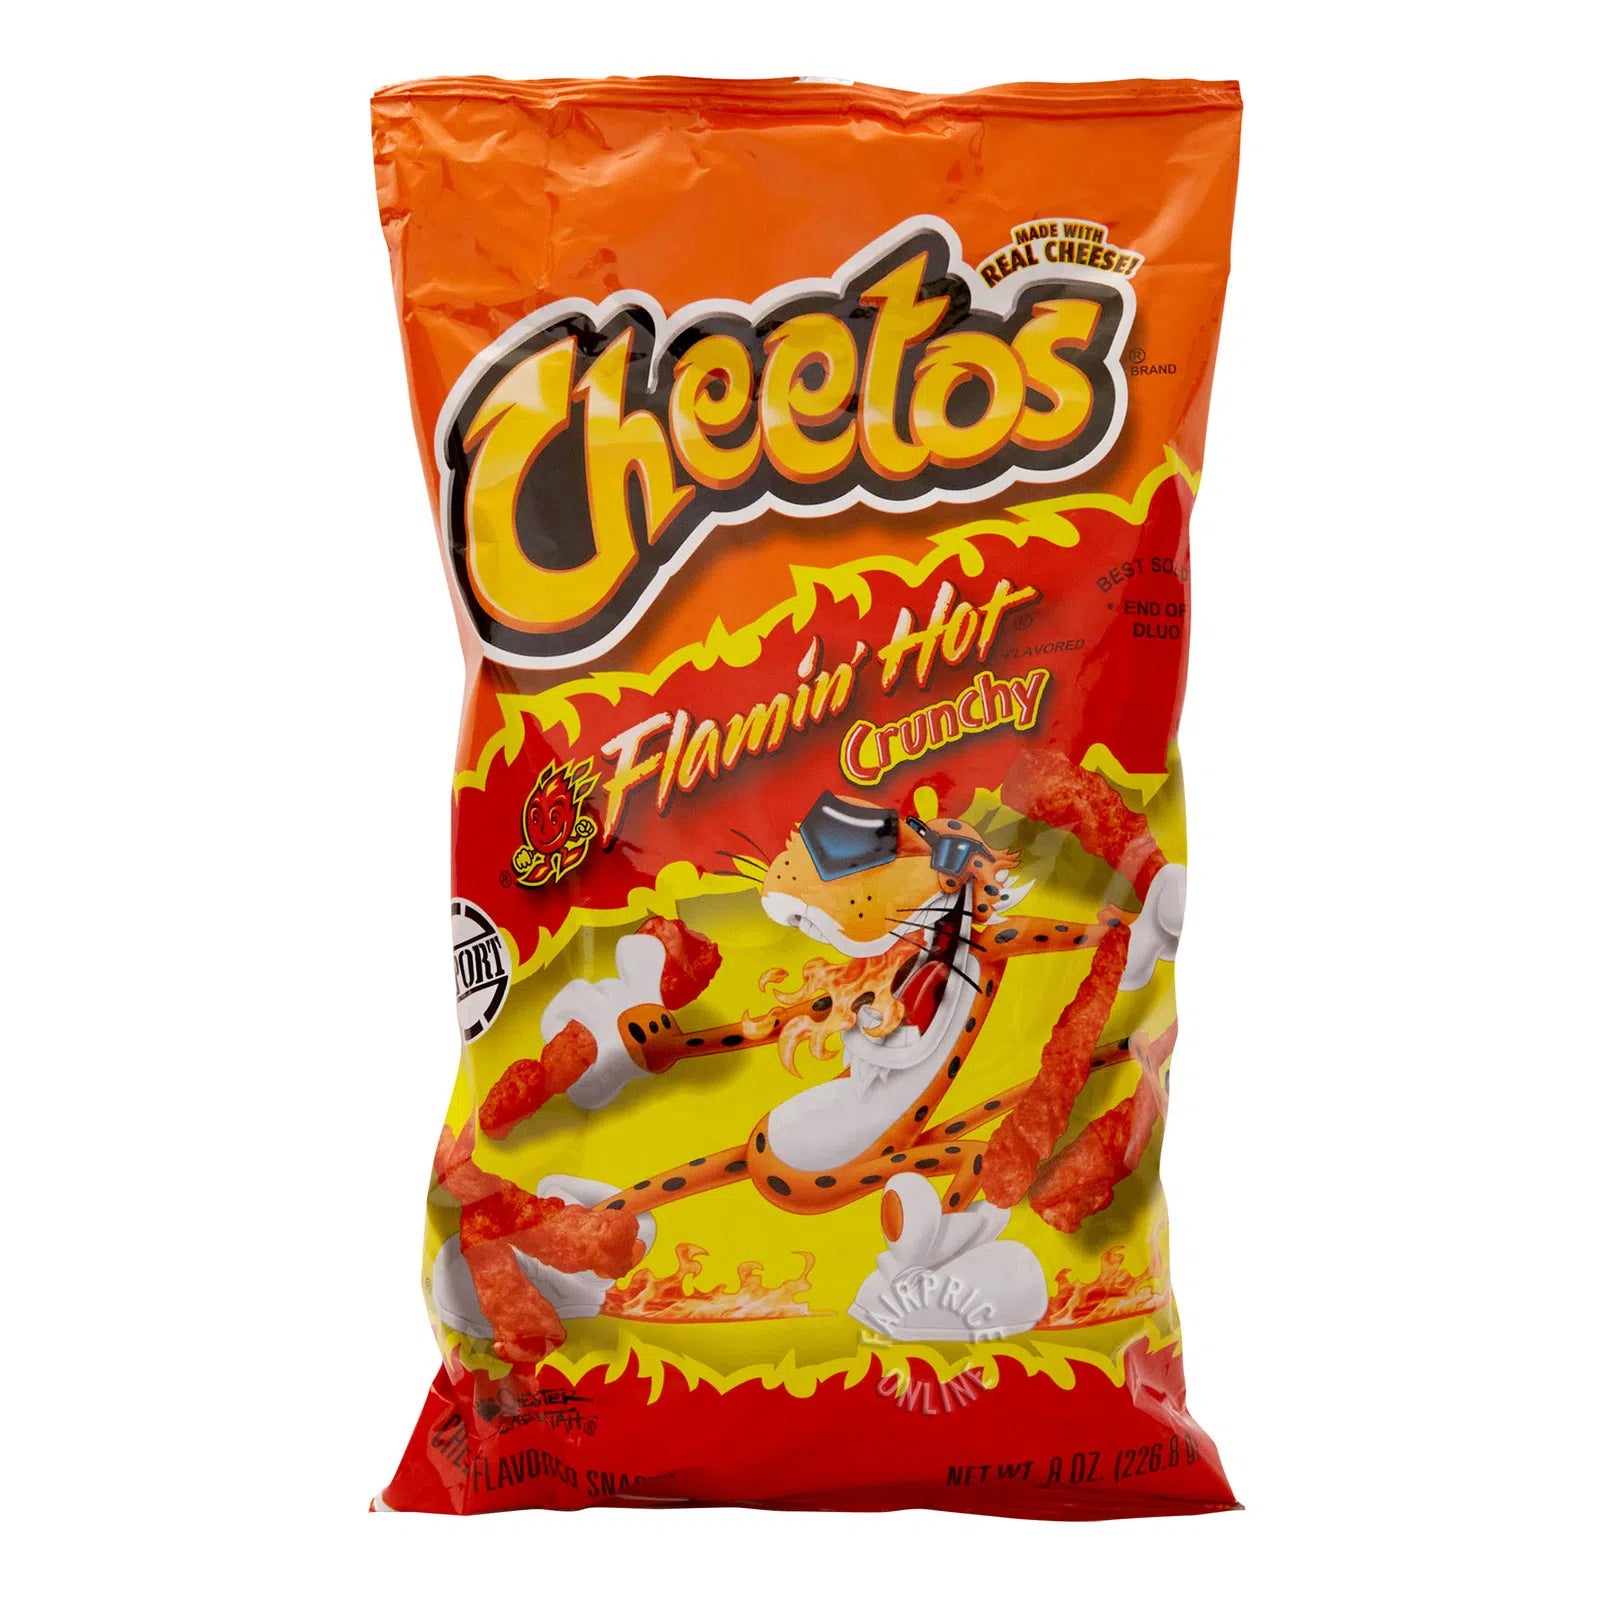 Cheetos - Crunchy Flamin' Hot (big bag)